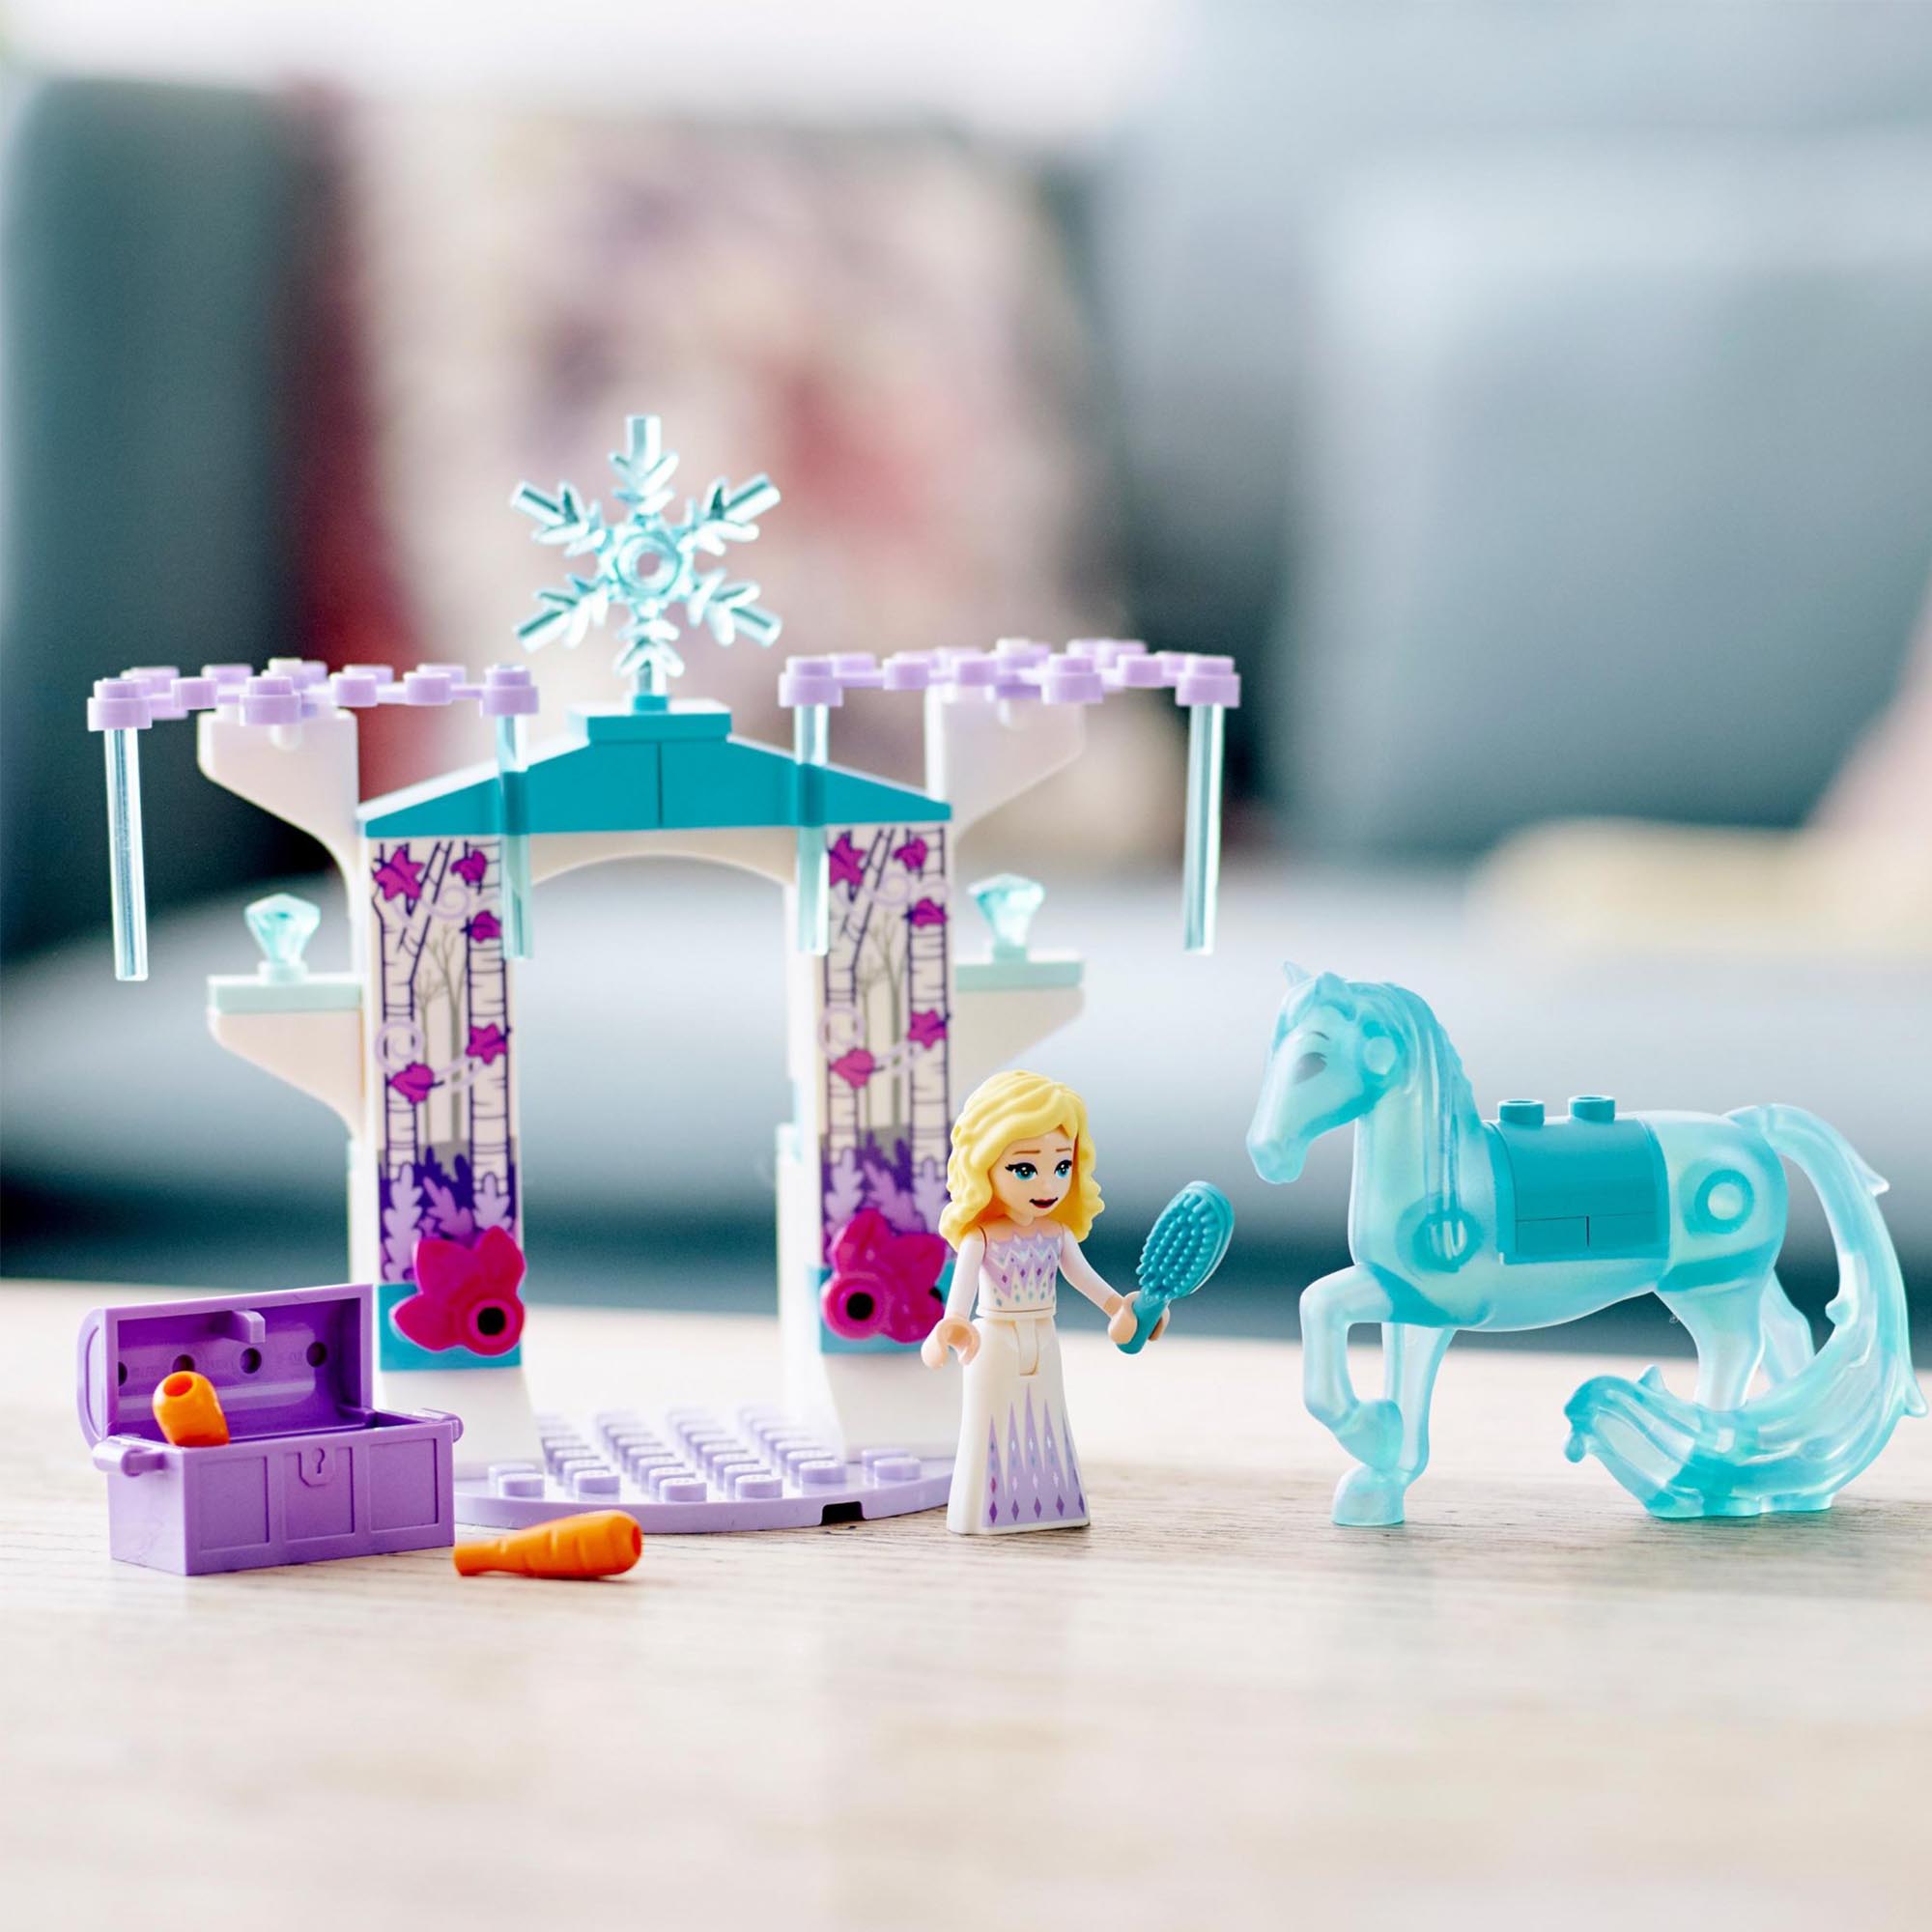 LEGO 43209 Disney Elsa e La Stalla Di Ghiaccio Di Nokk, Idea Regalo per Bambini  43209, , large